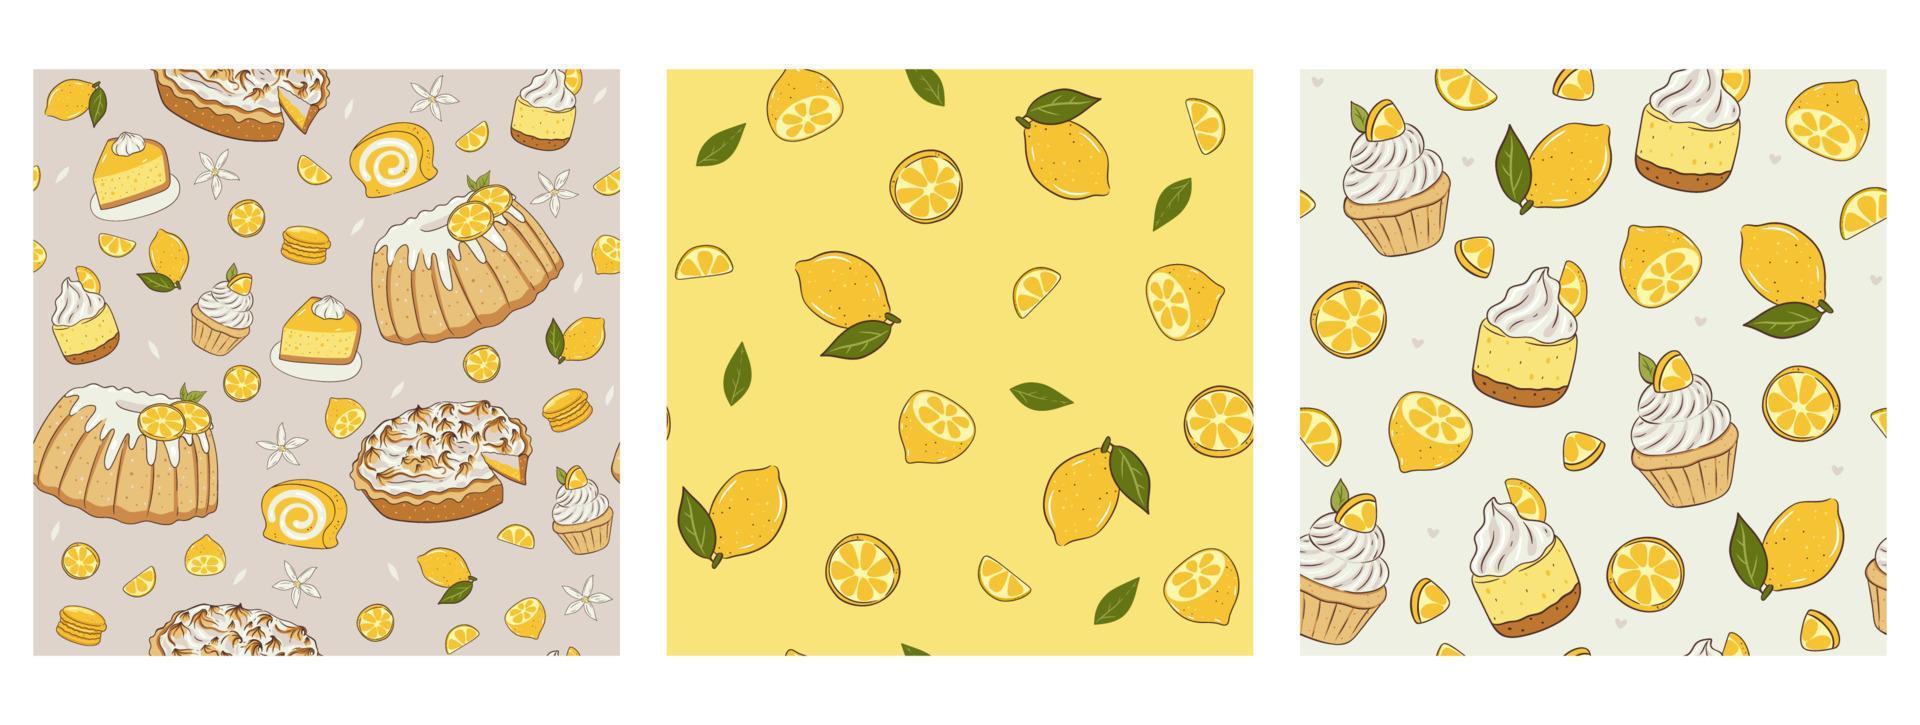 uppsättning av mönster med citroner och desserter. vektor grafik.